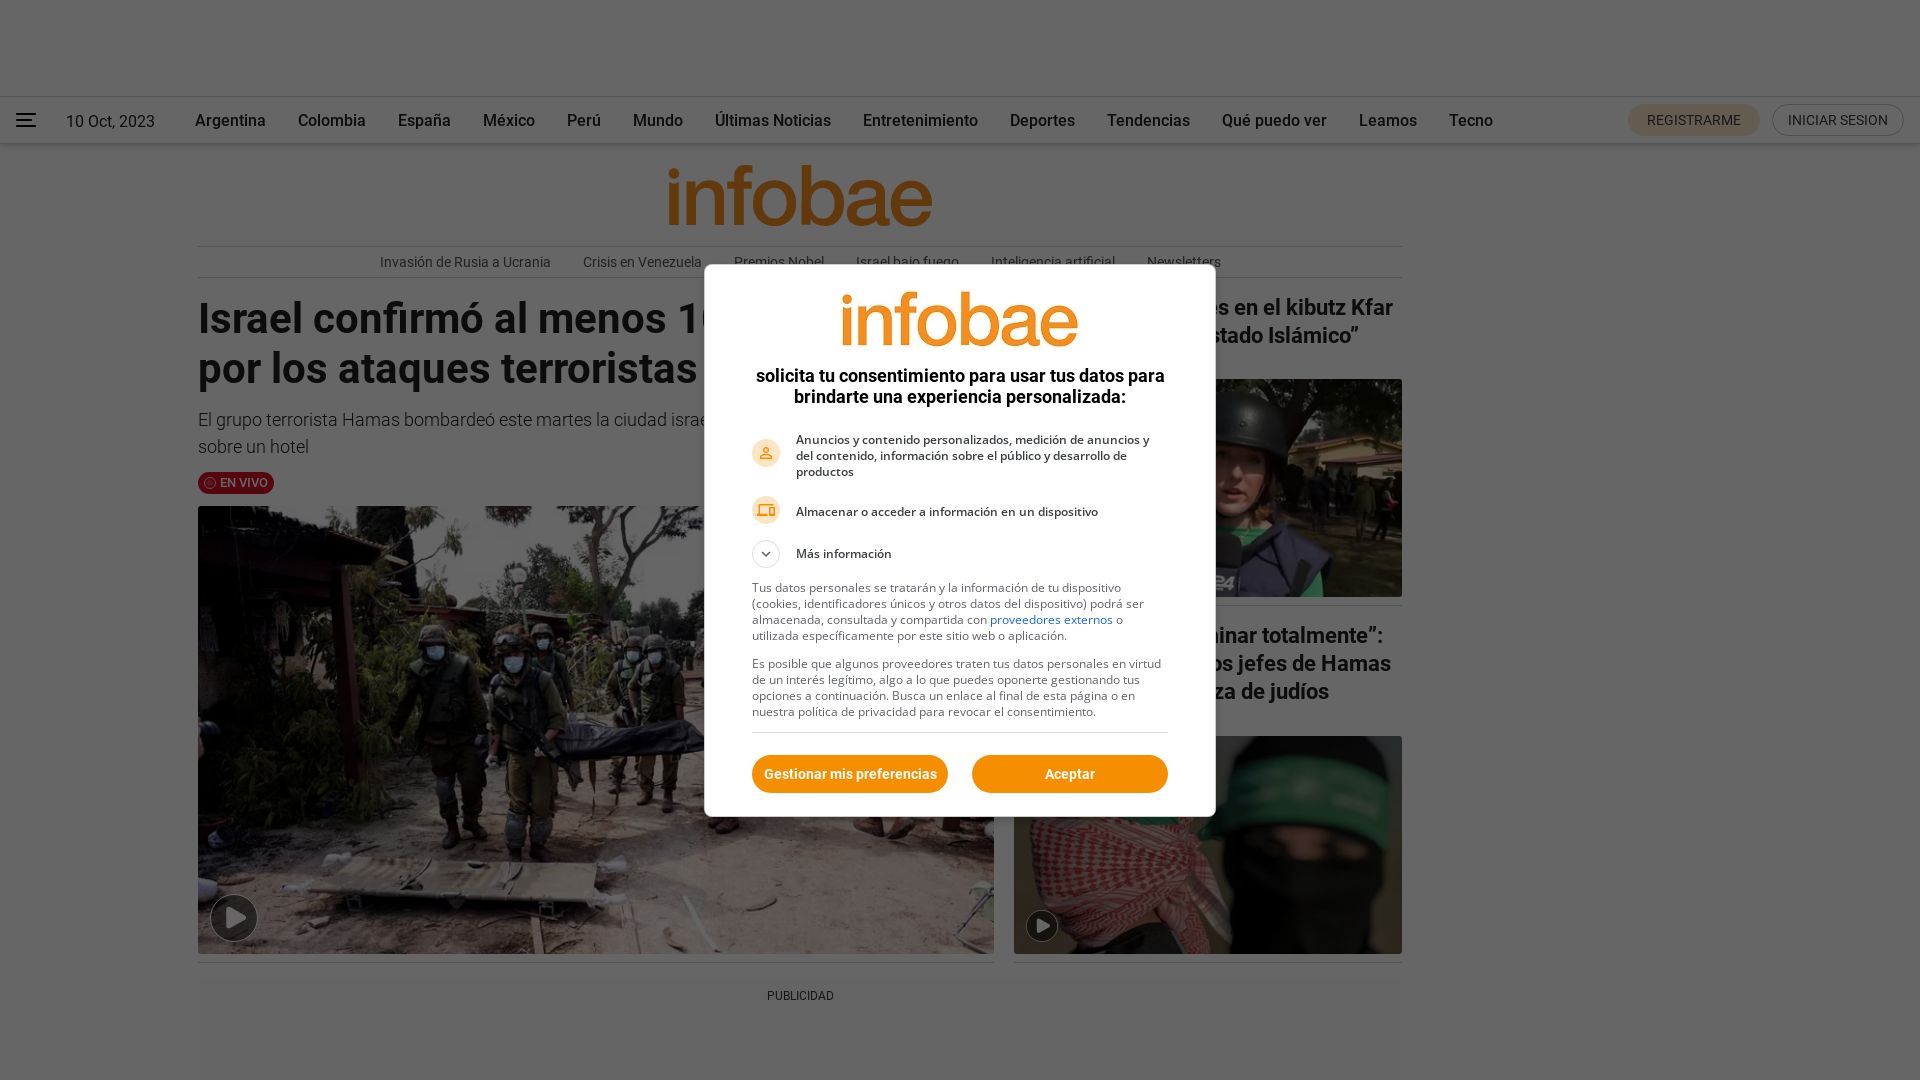 网站状态 infobae.com 是  在线的